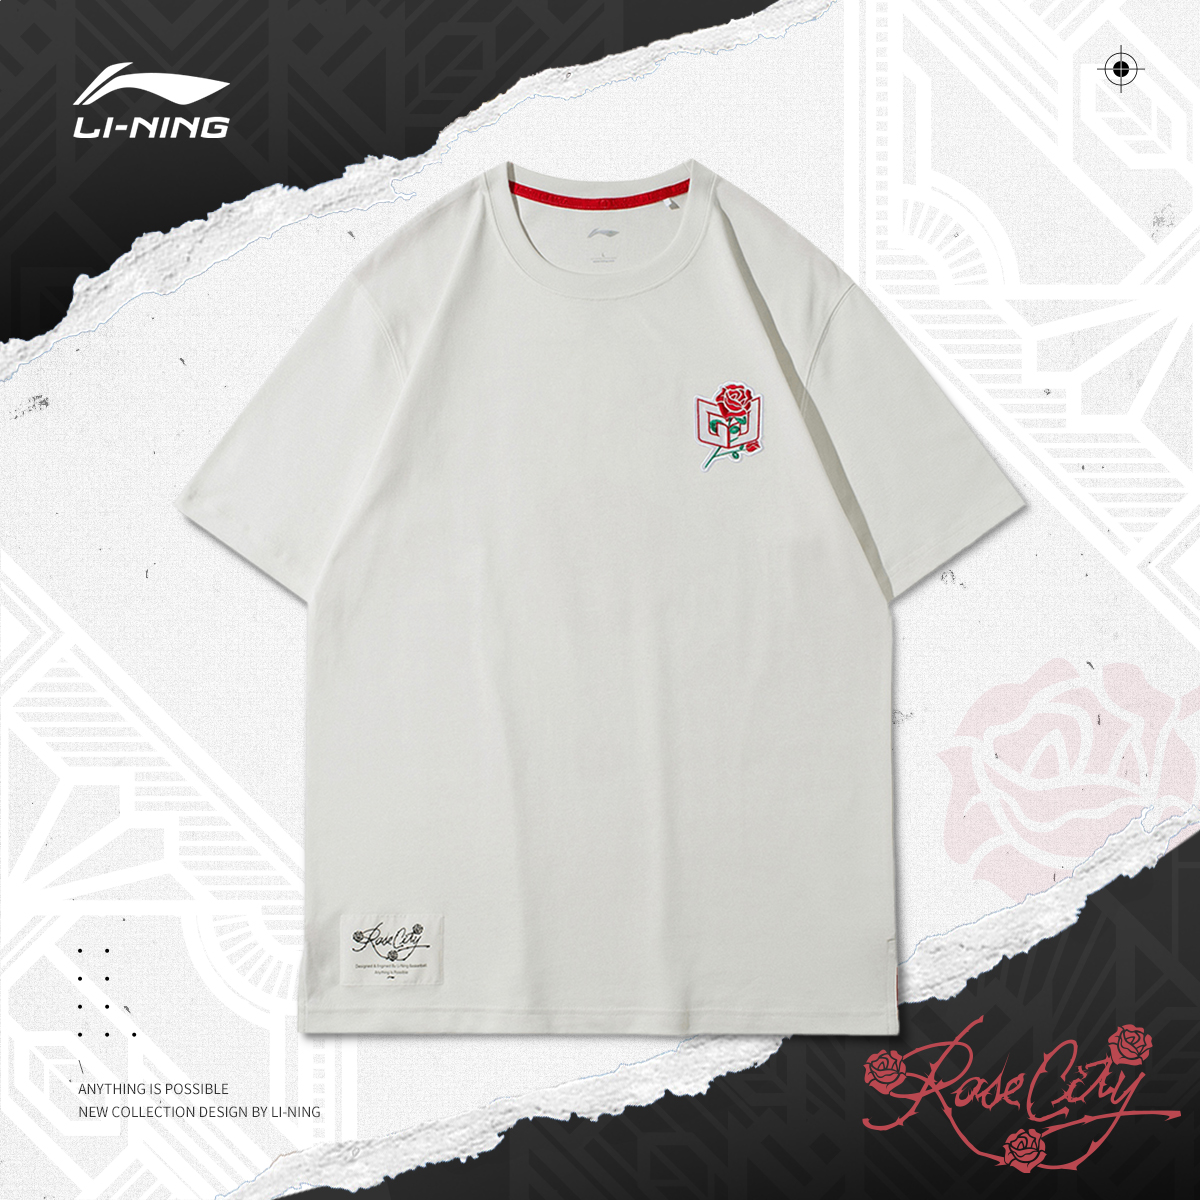 李寧短袖CJ-玫瑰之城籃球系列男裝圓領上衣運動T恤